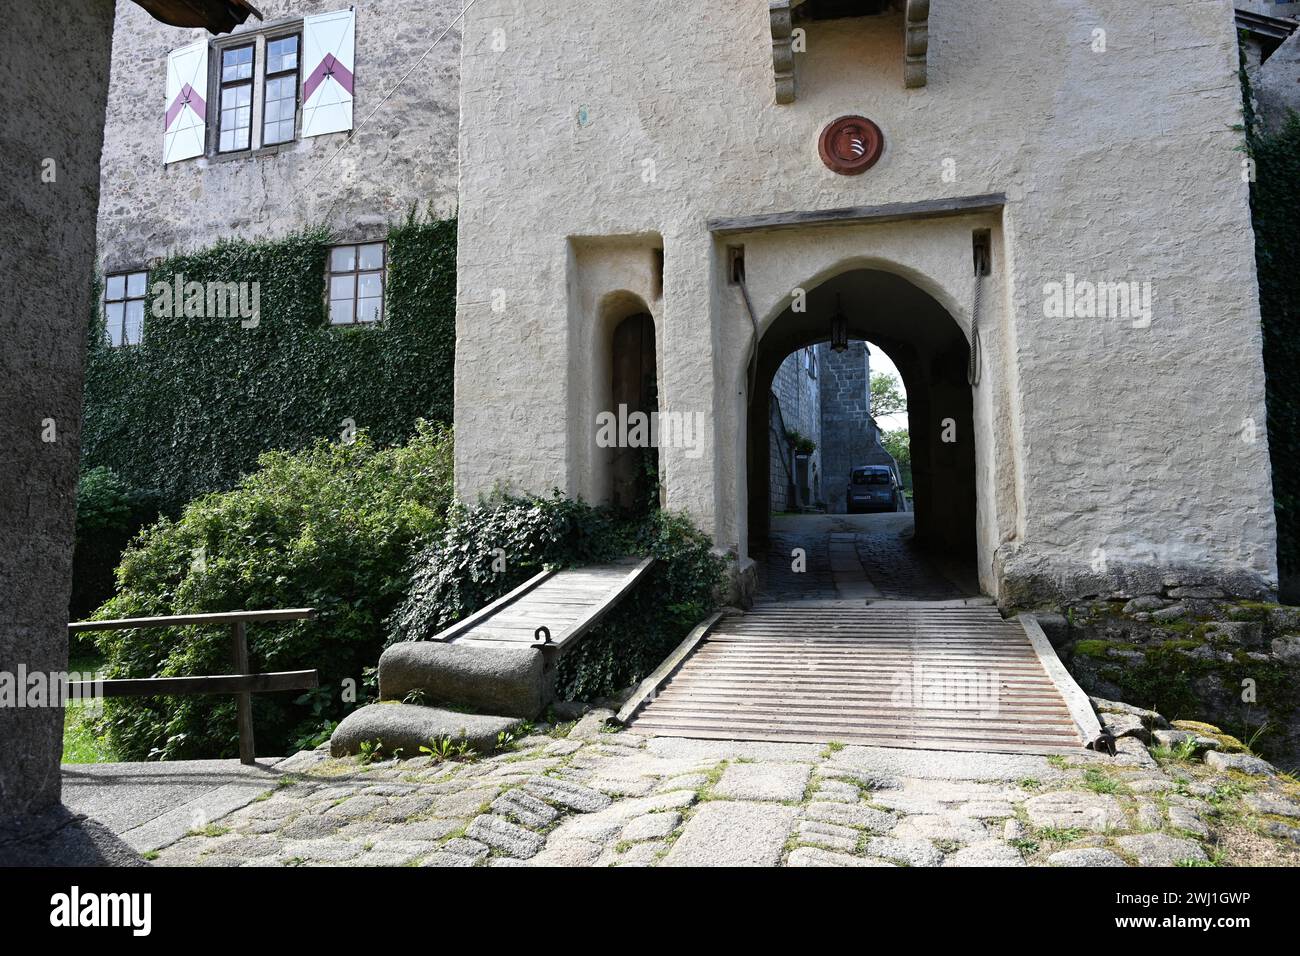 Castle Heidenreichstein, Austria Stock Photo